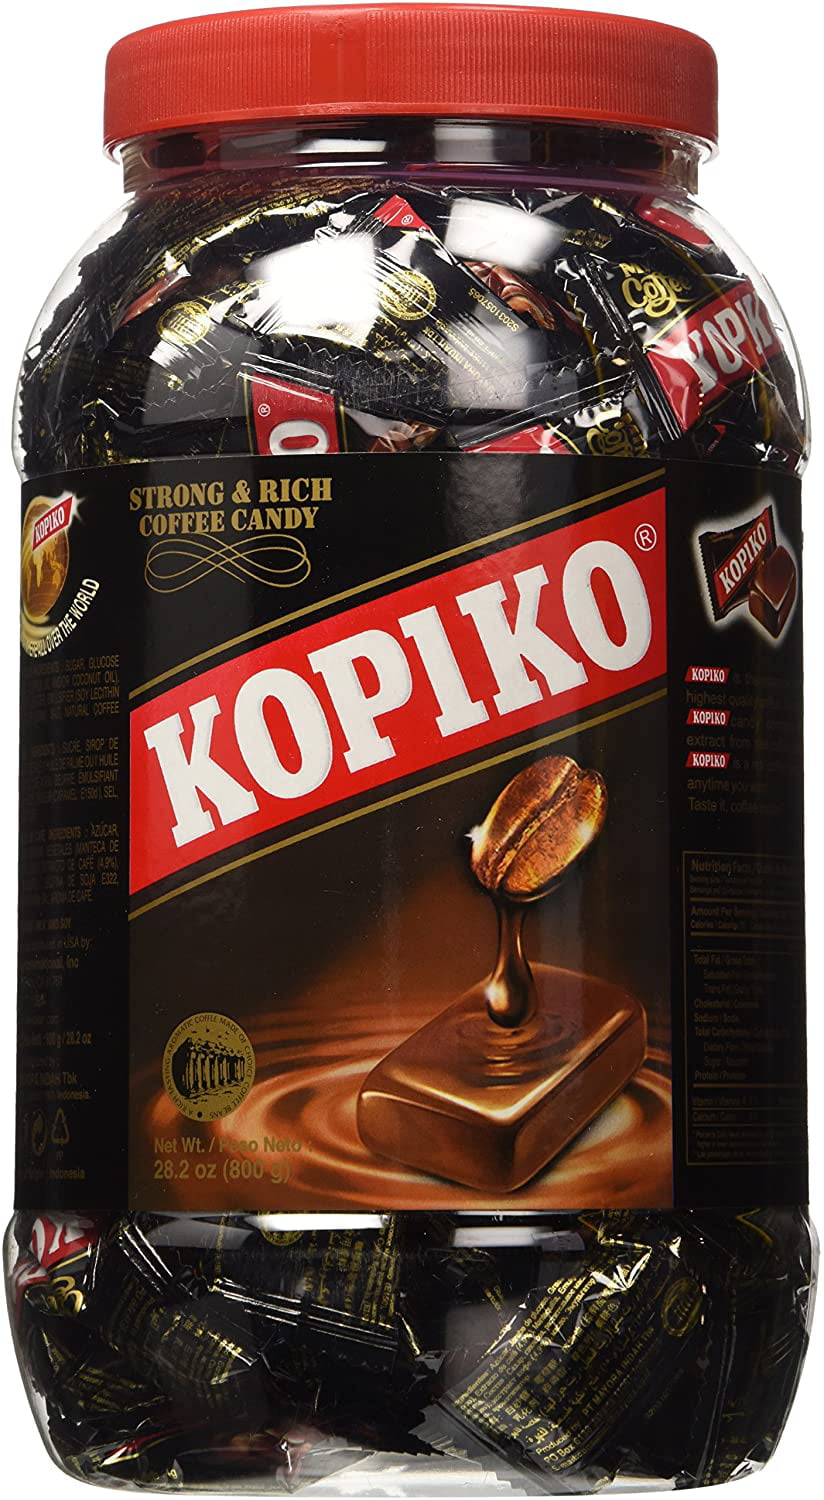 Kopiko, le bonbon au café en exclu dans votre épicerie asiatique